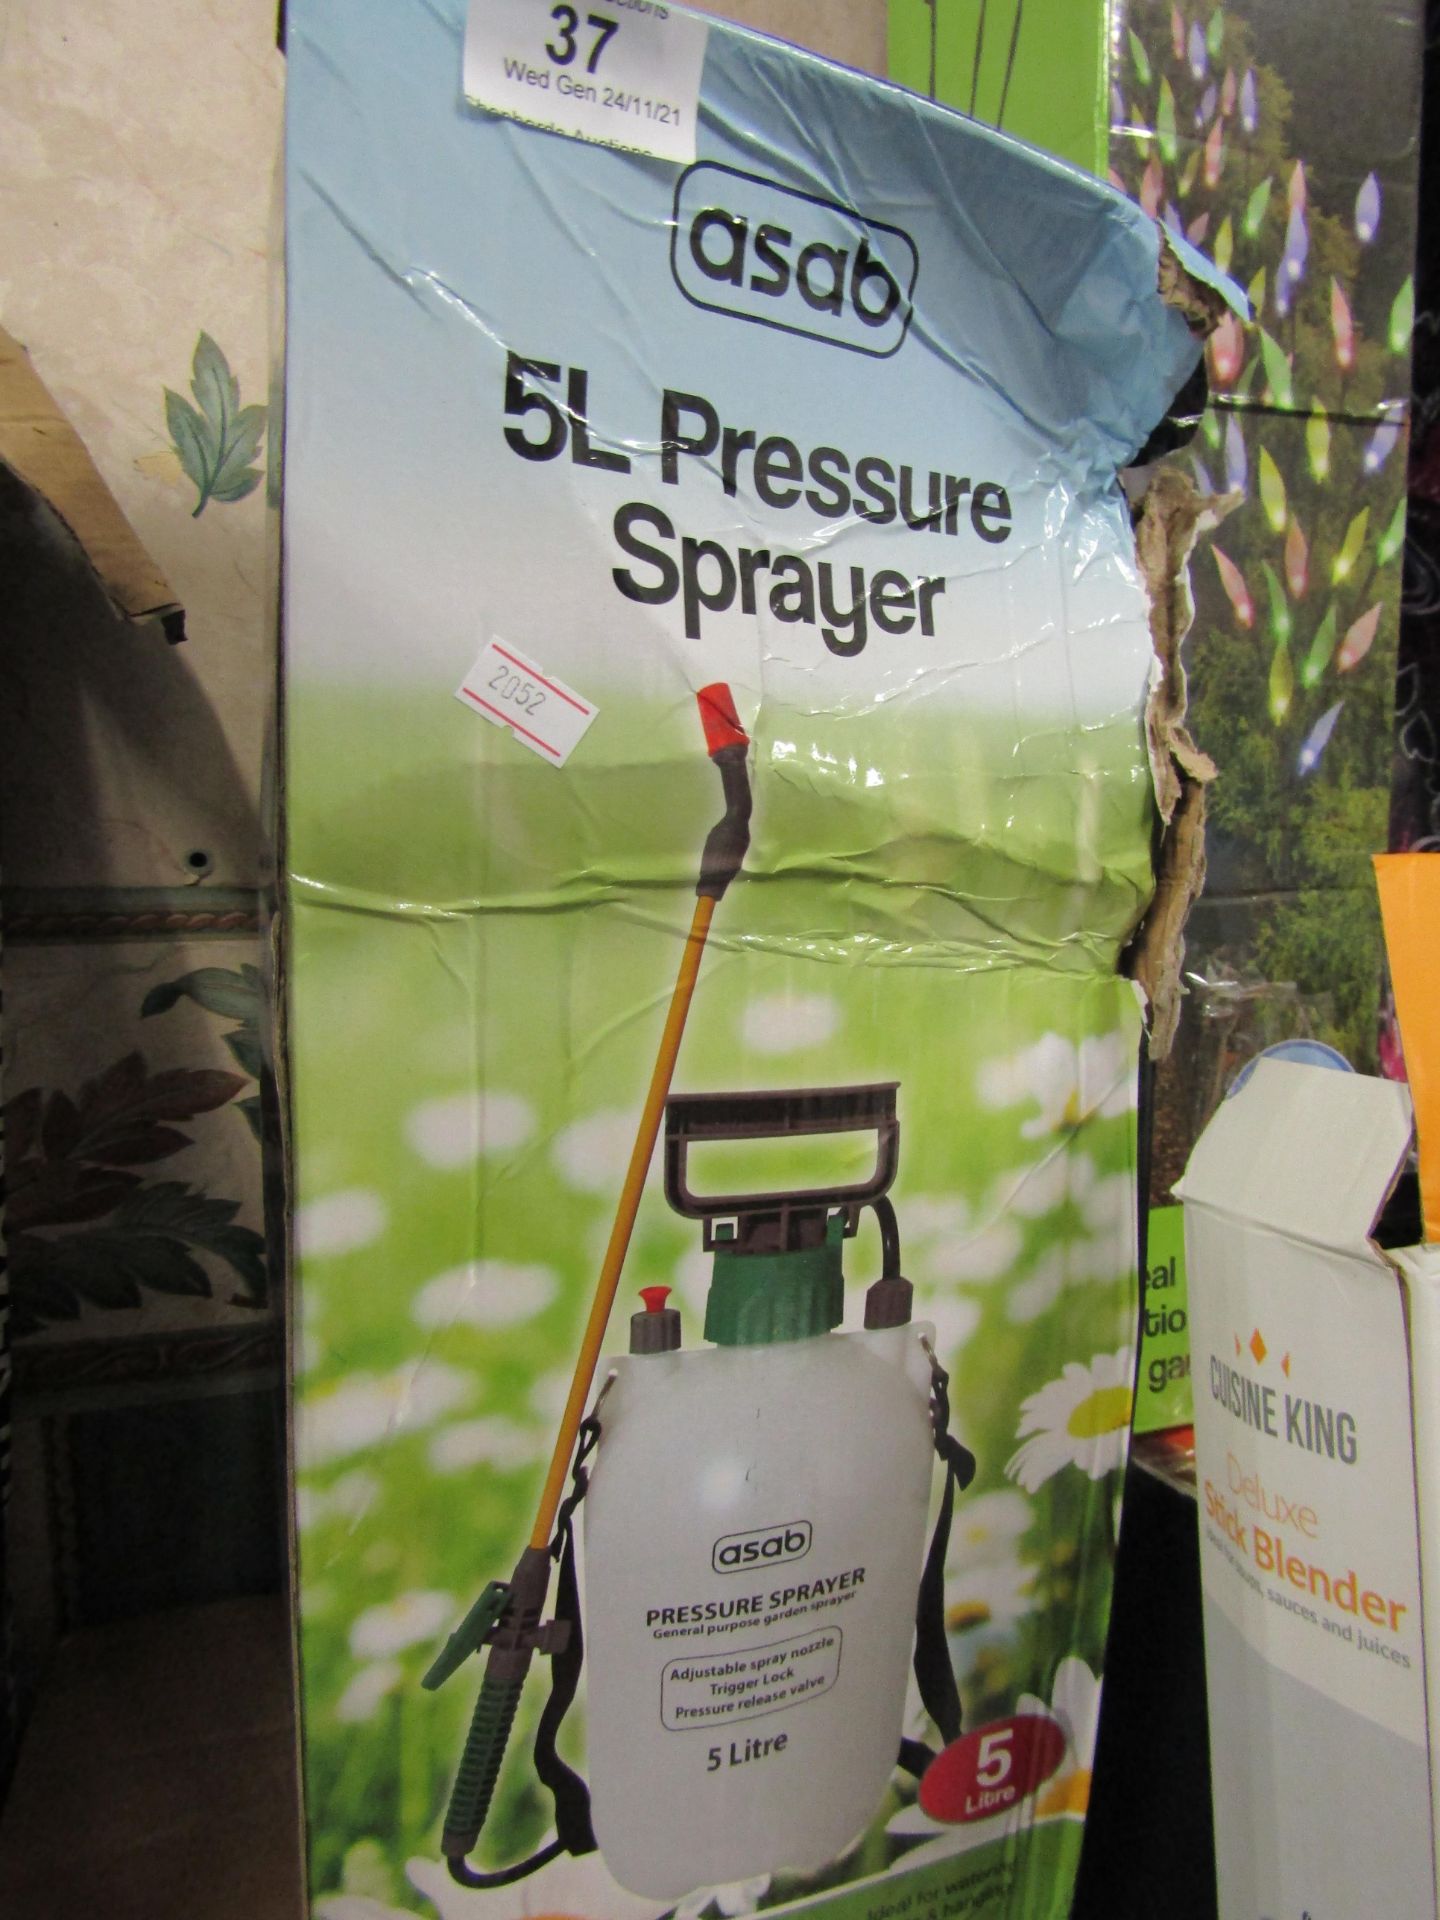 1 x Asab 5L Pressure Sprayer packaged looks unused (packaging is damaged)